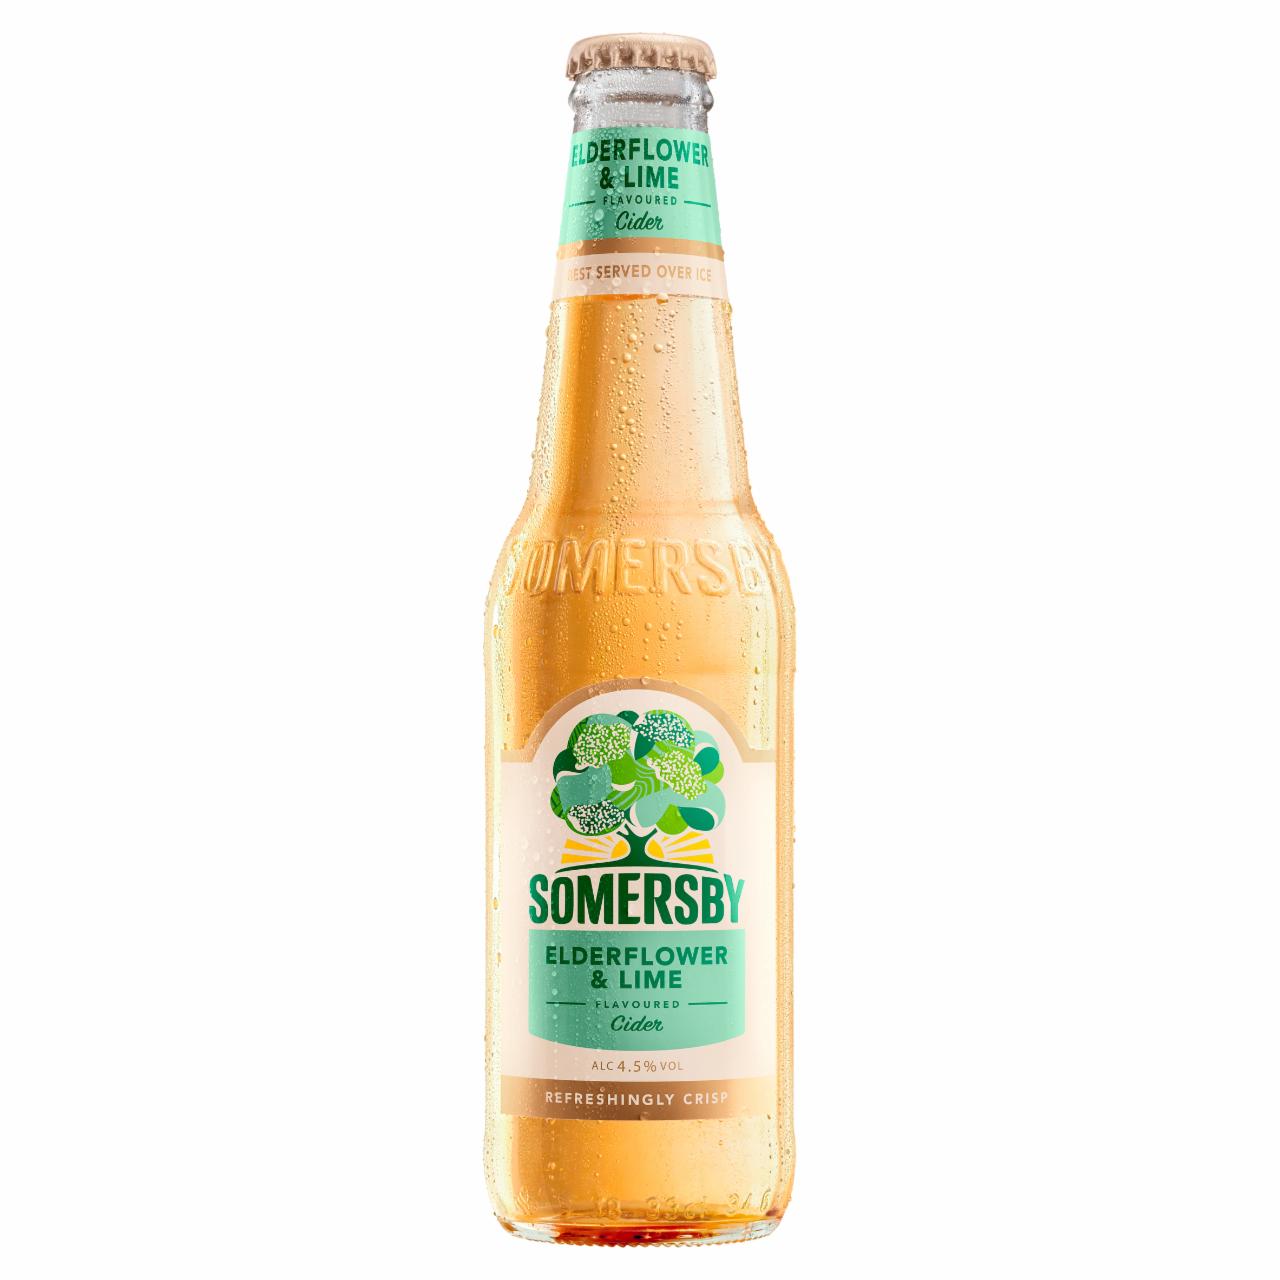 Képek - Somersby cider almalé alapú szénsavas, alkoholos ital bodza-lime ízesítéssel 4,5% 330 ml